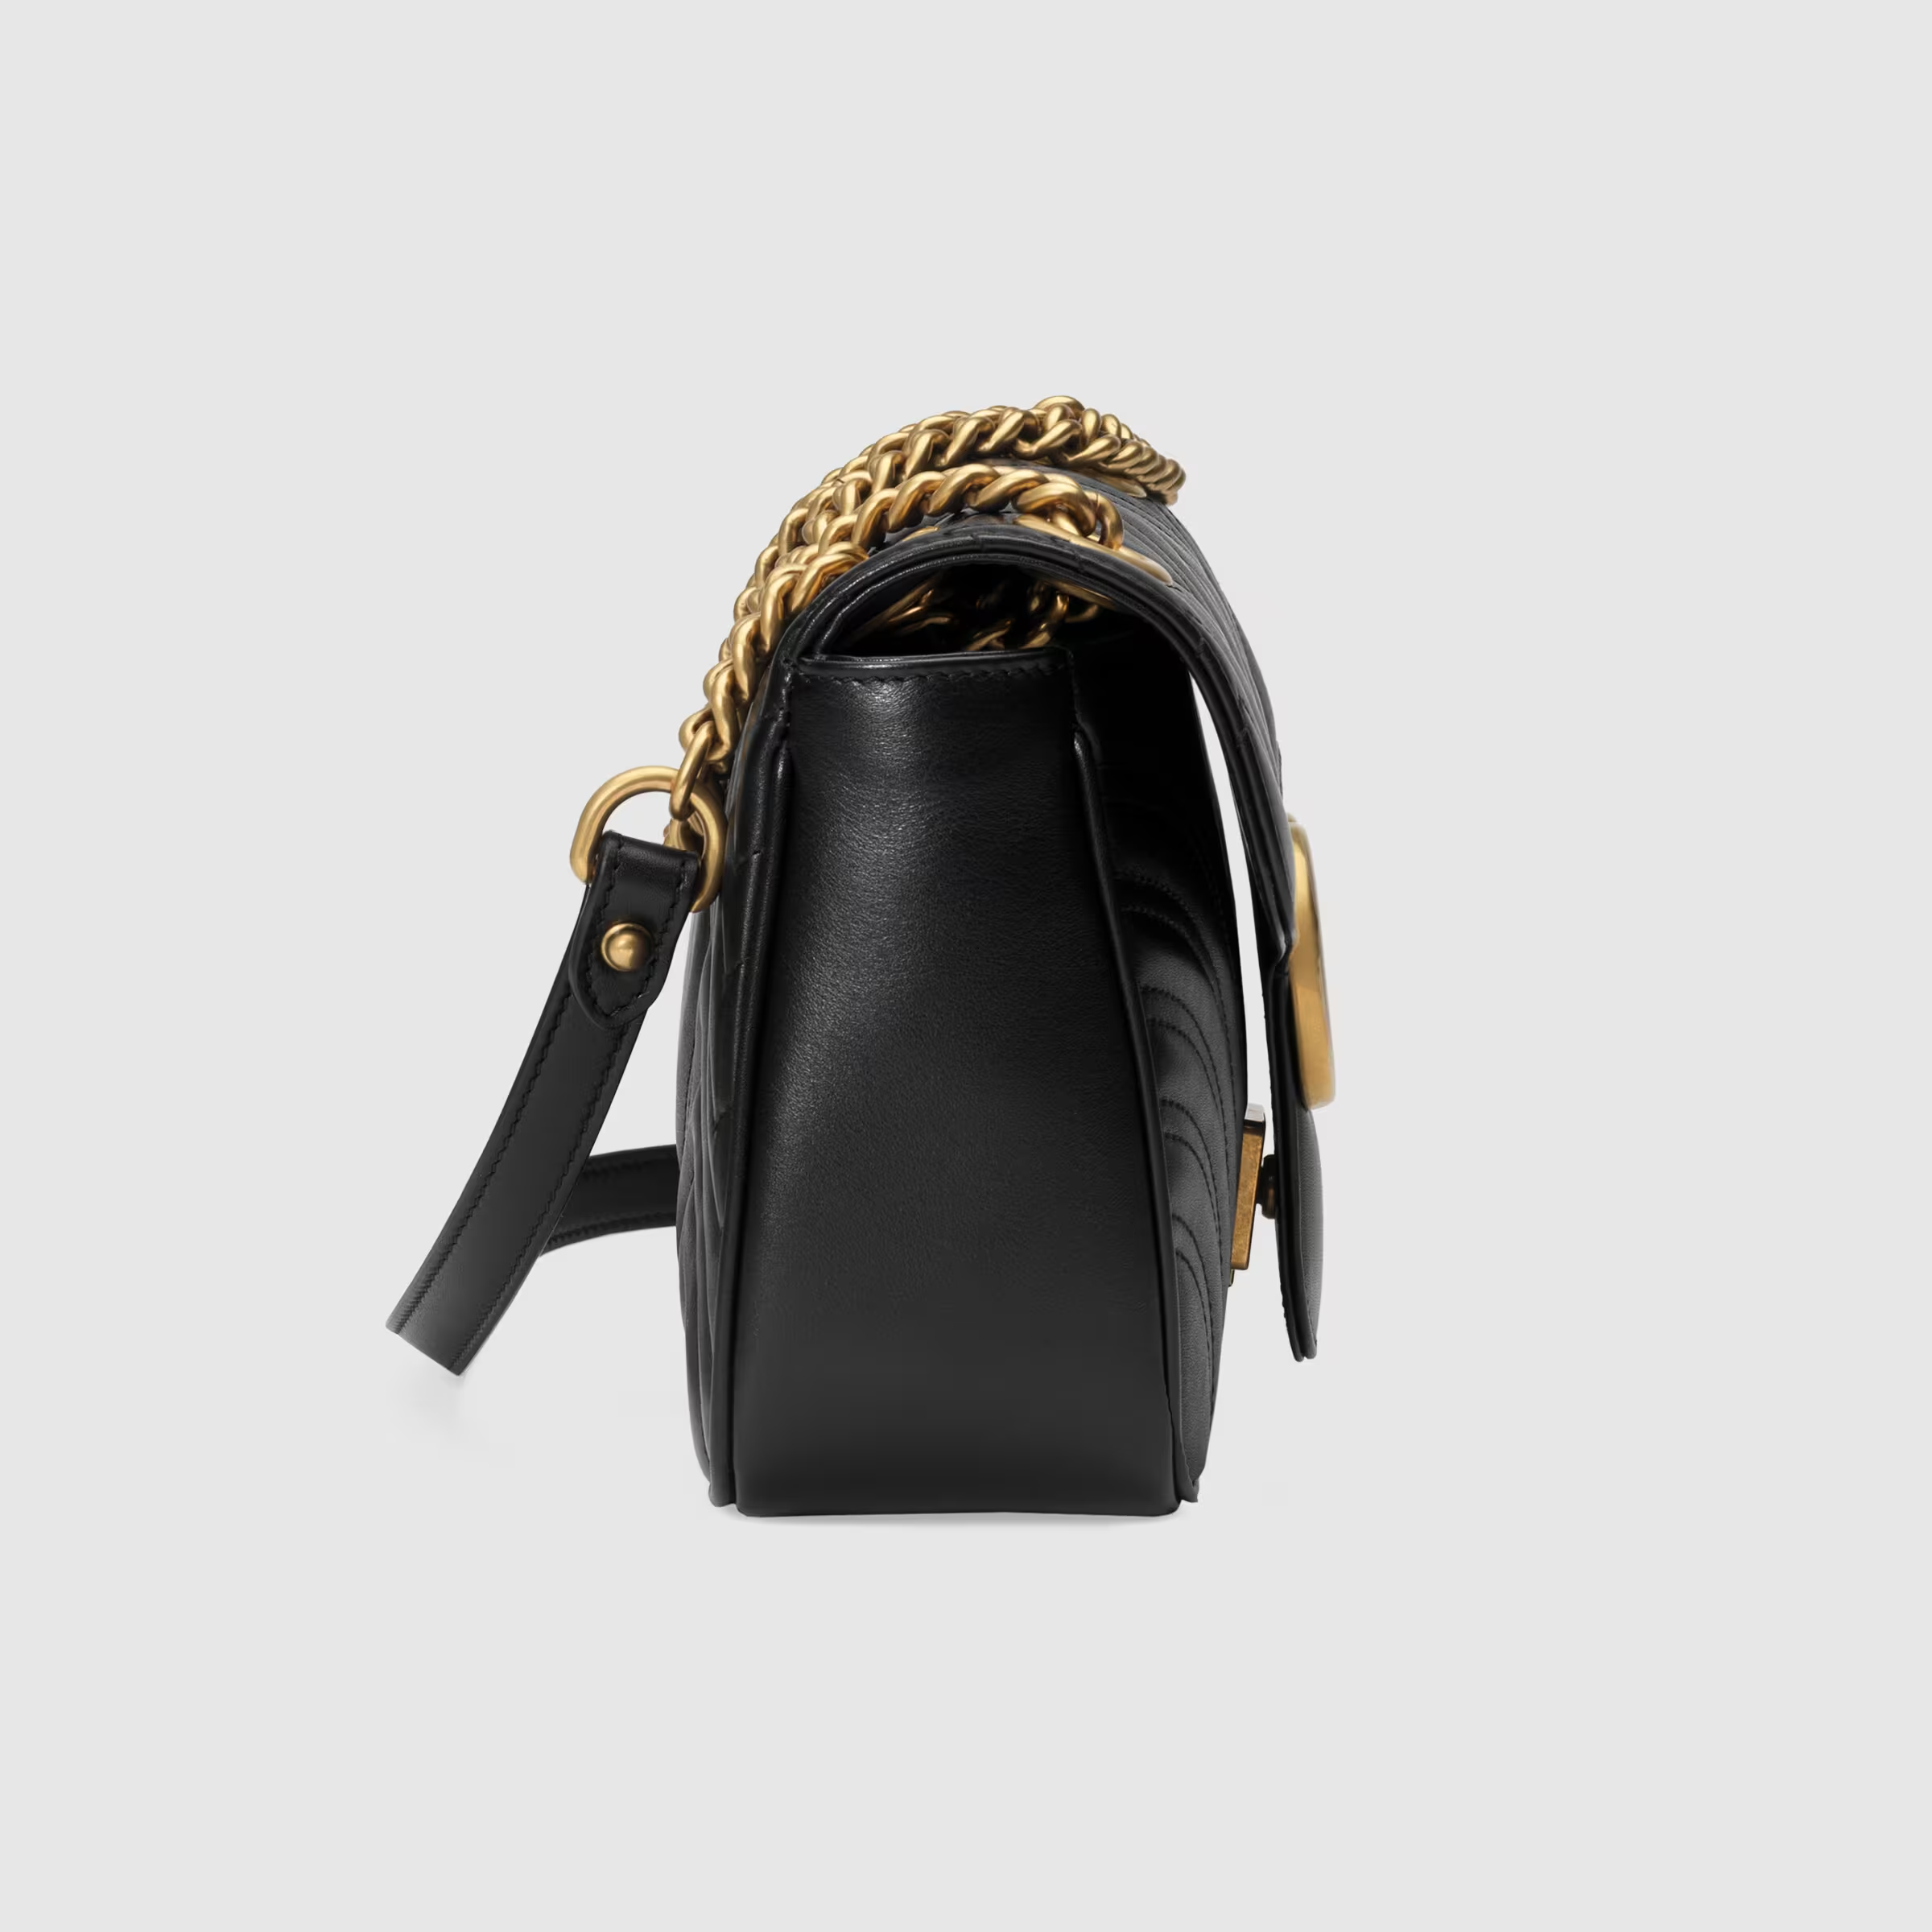 Gucci Marmont small shoulder bag - Bag factory